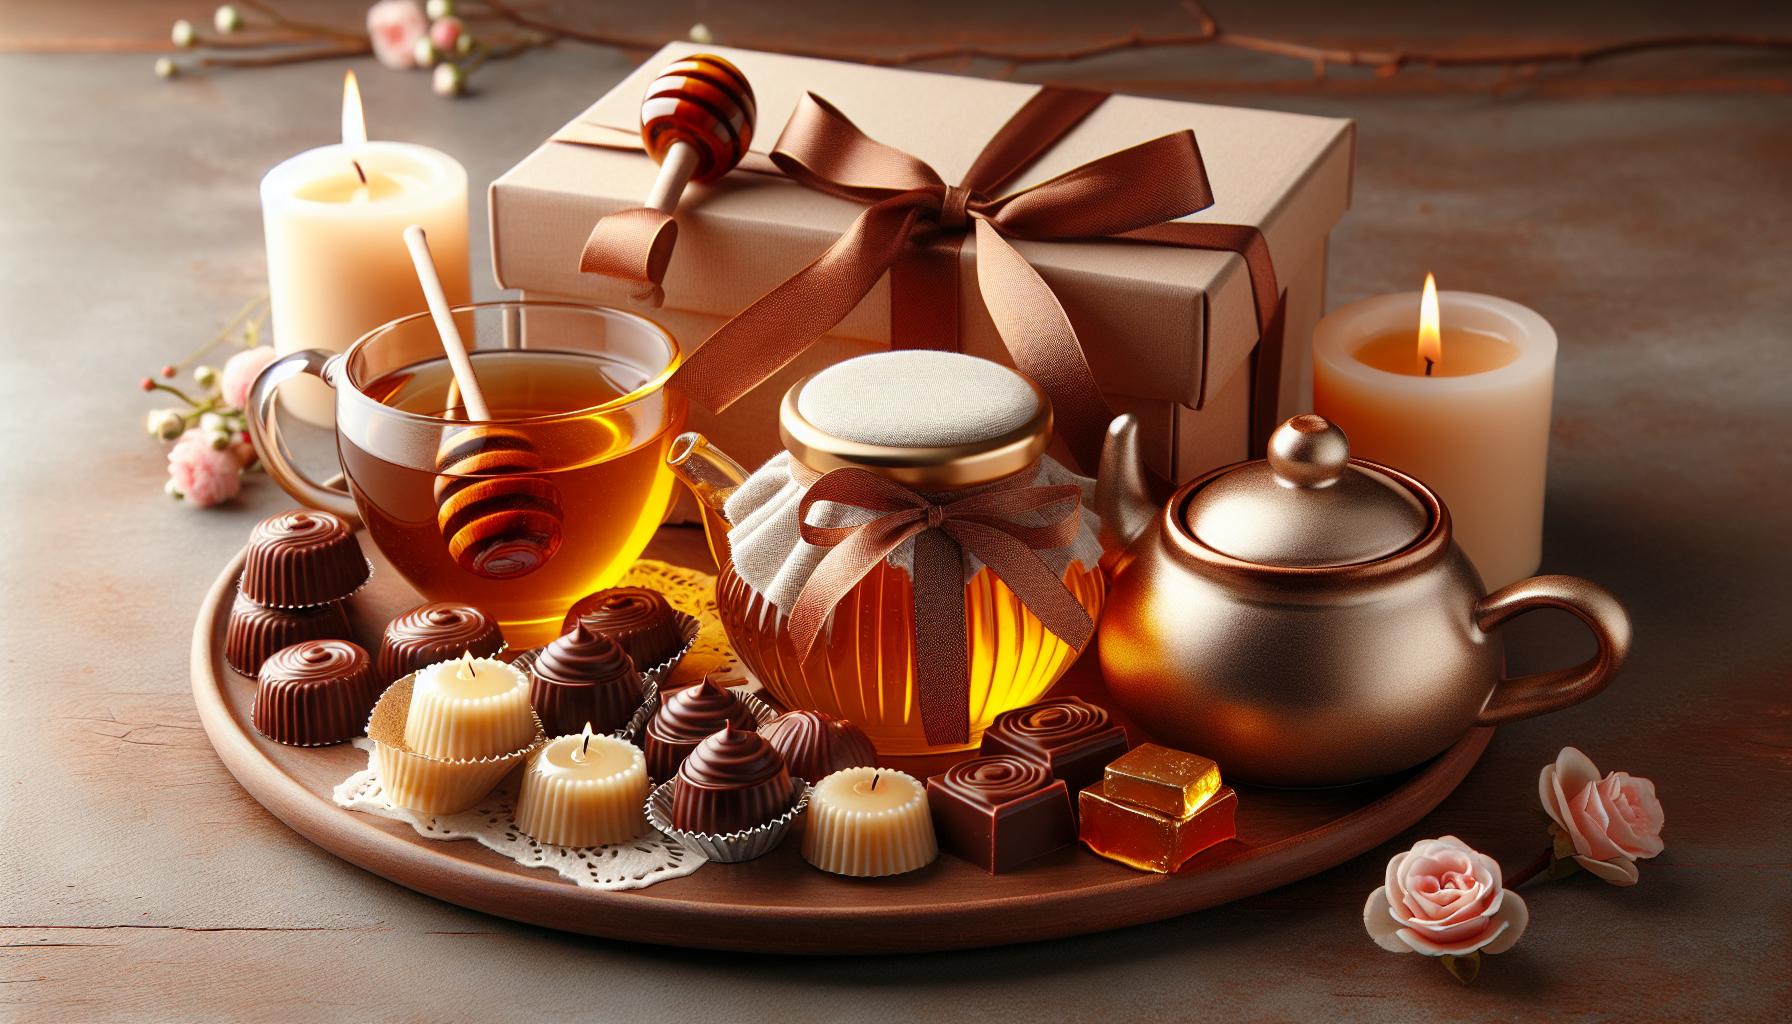 Wyjątkowe prezenty z oznaką sympatii: zestawy z miodem,‍ herbatą, czekoladą i woskowymi świecami